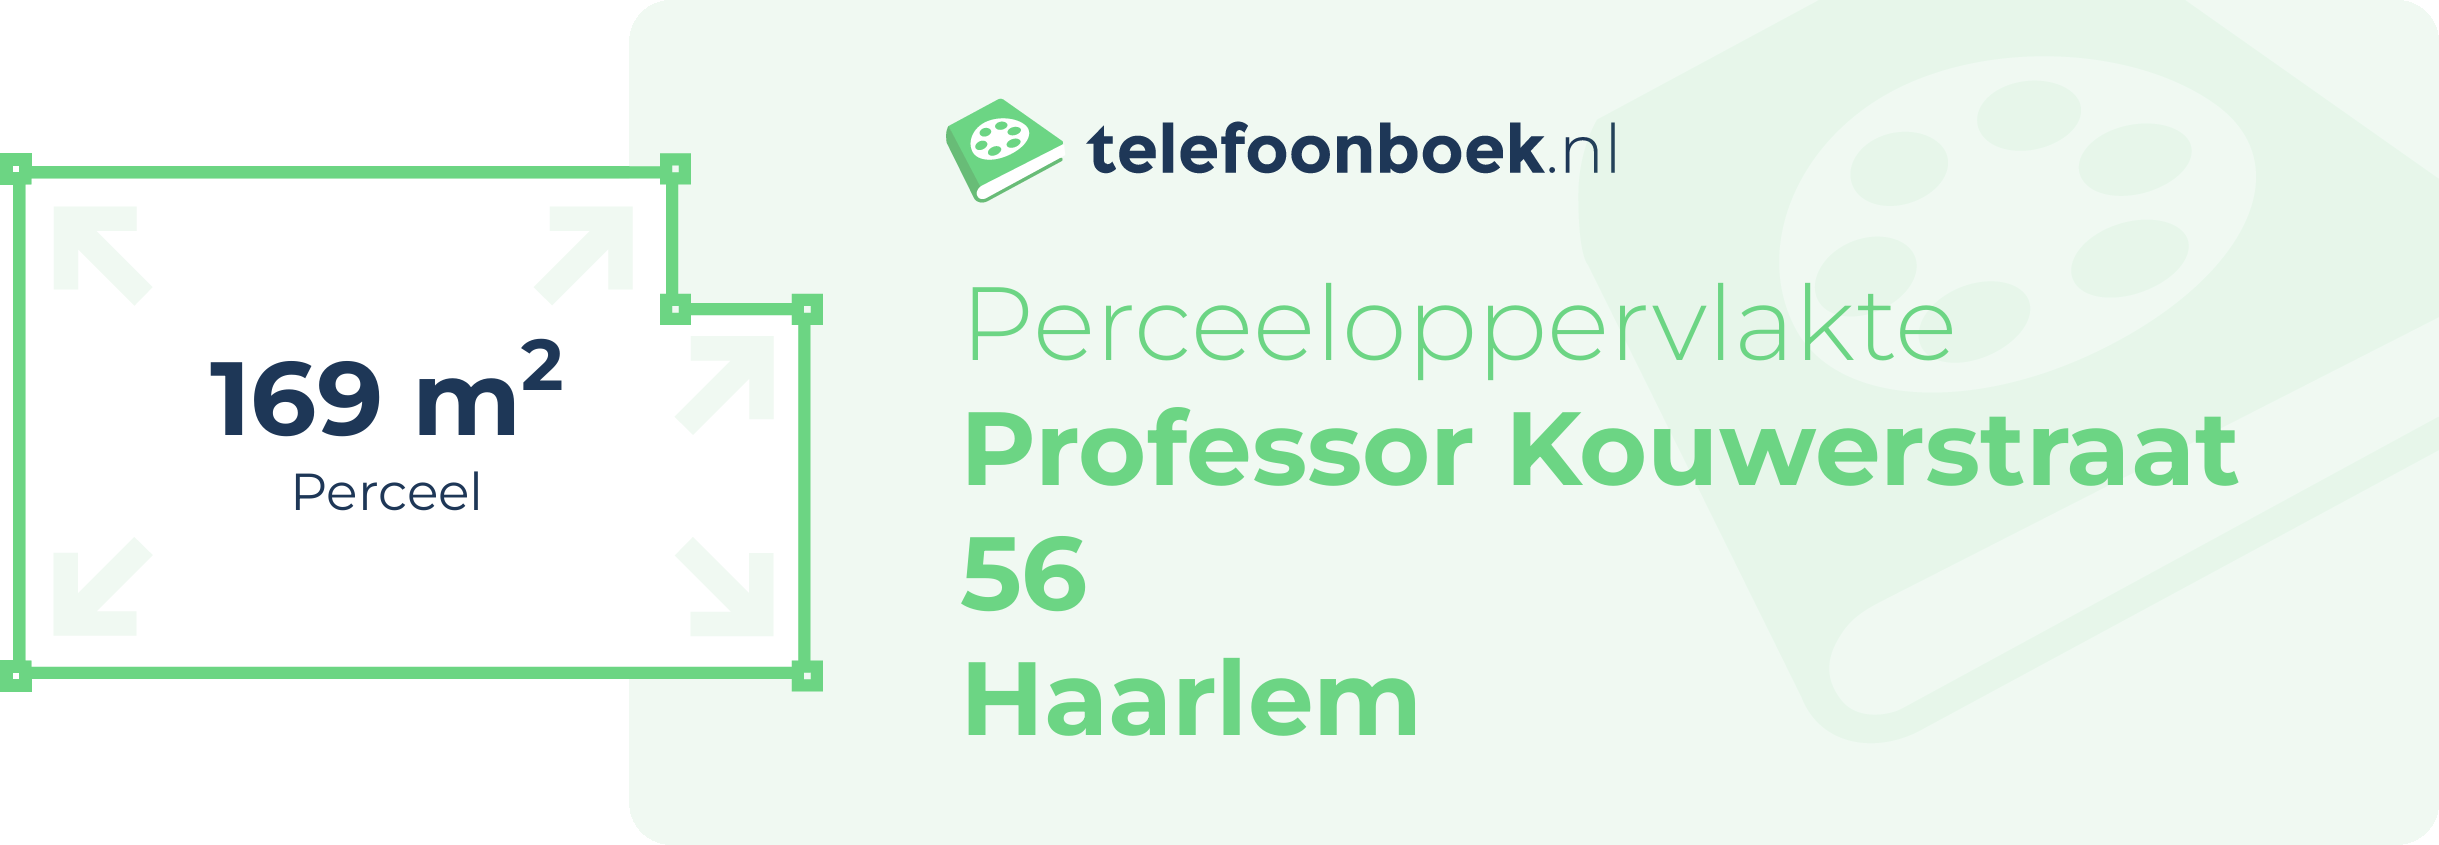 Perceeloppervlakte Professor Kouwerstraat 56 Haarlem